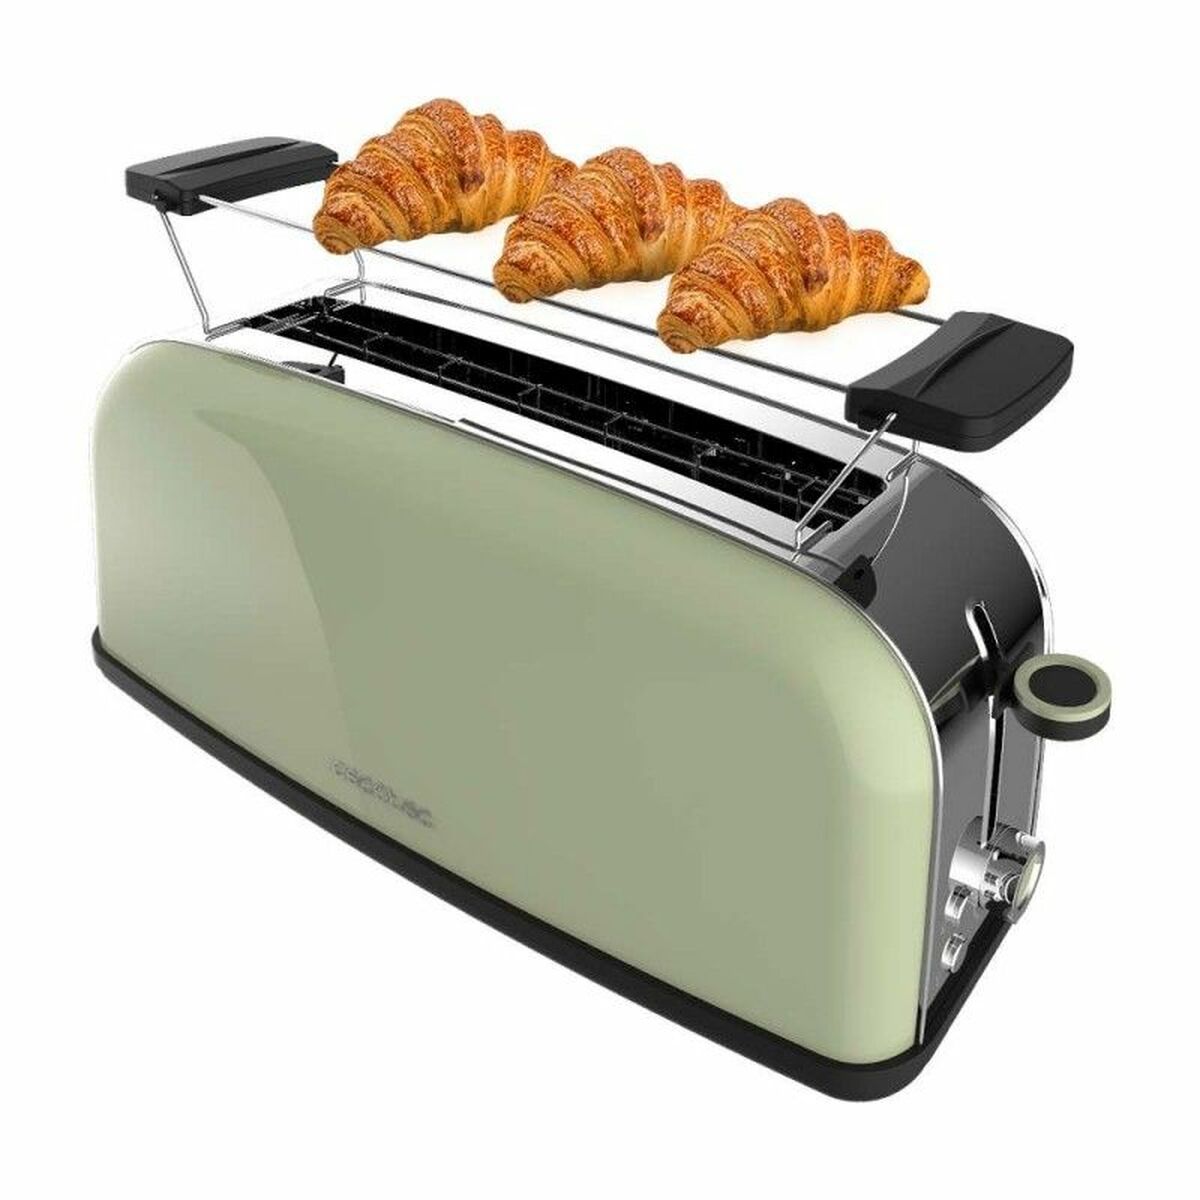 Kaufe Toaster Cecotec Toastin' time 850 Long 850 W bei AWK Flagship um € 57.00